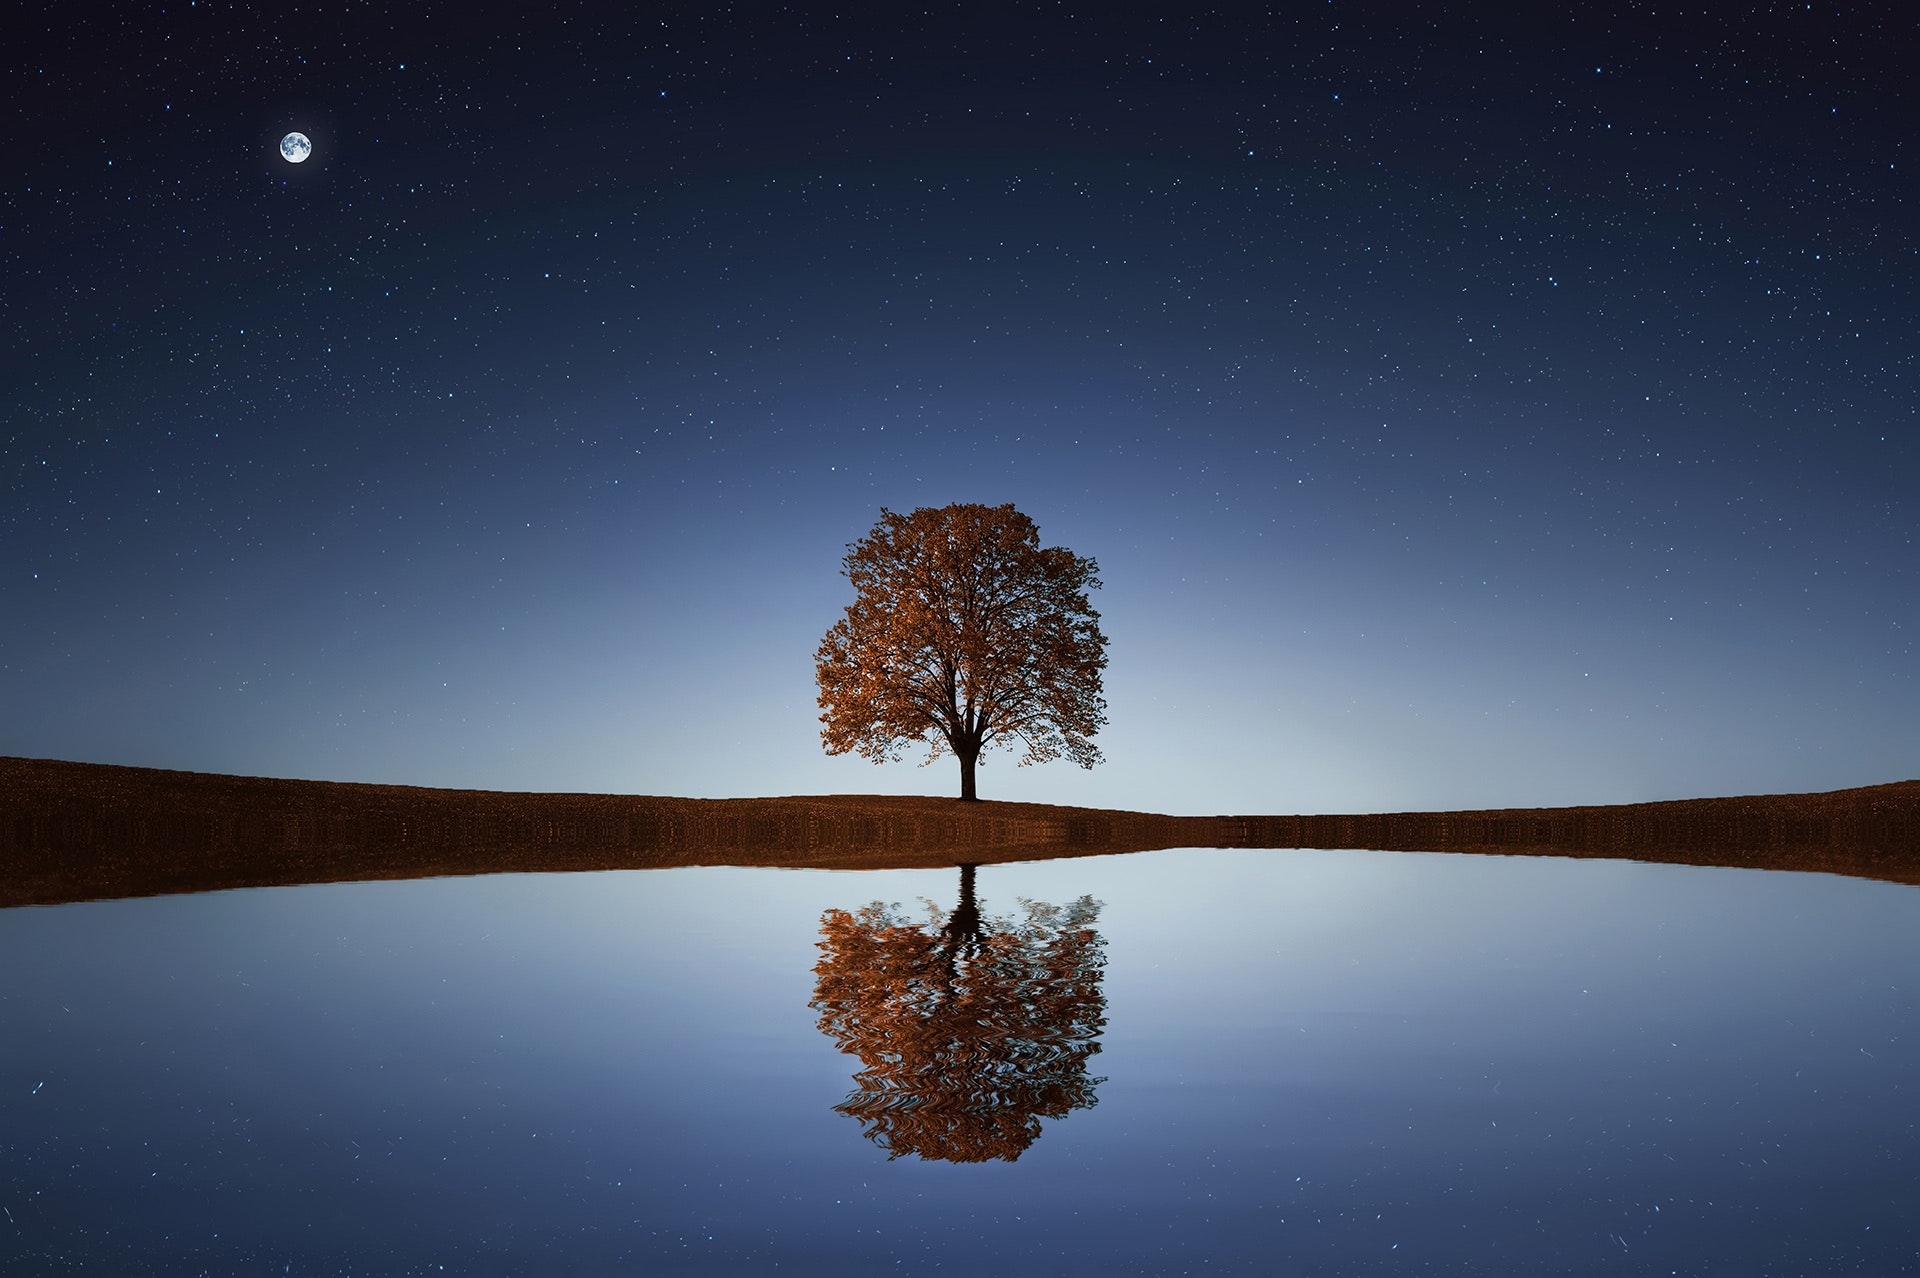 albero che si riflette nella notte